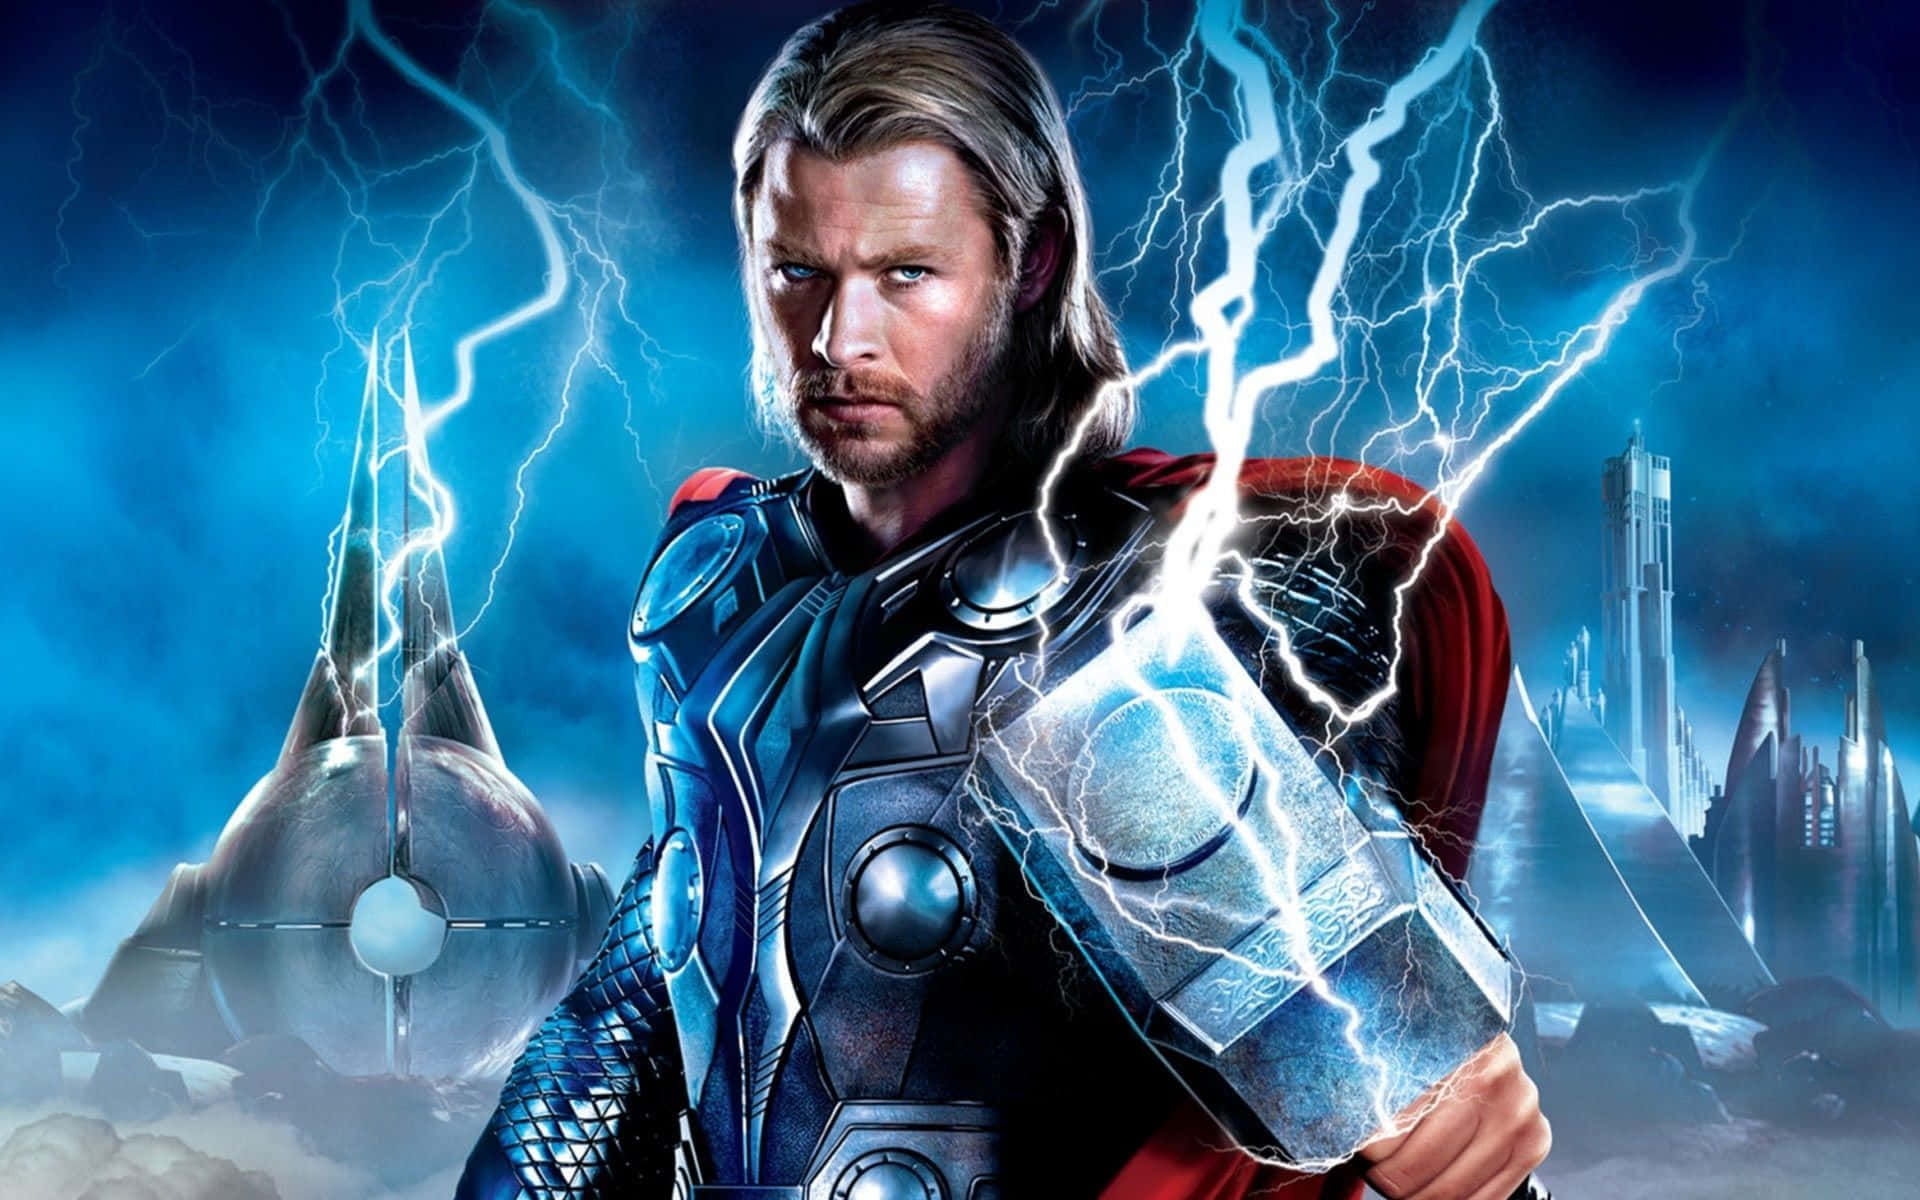 Hintergrundbildmit Thor